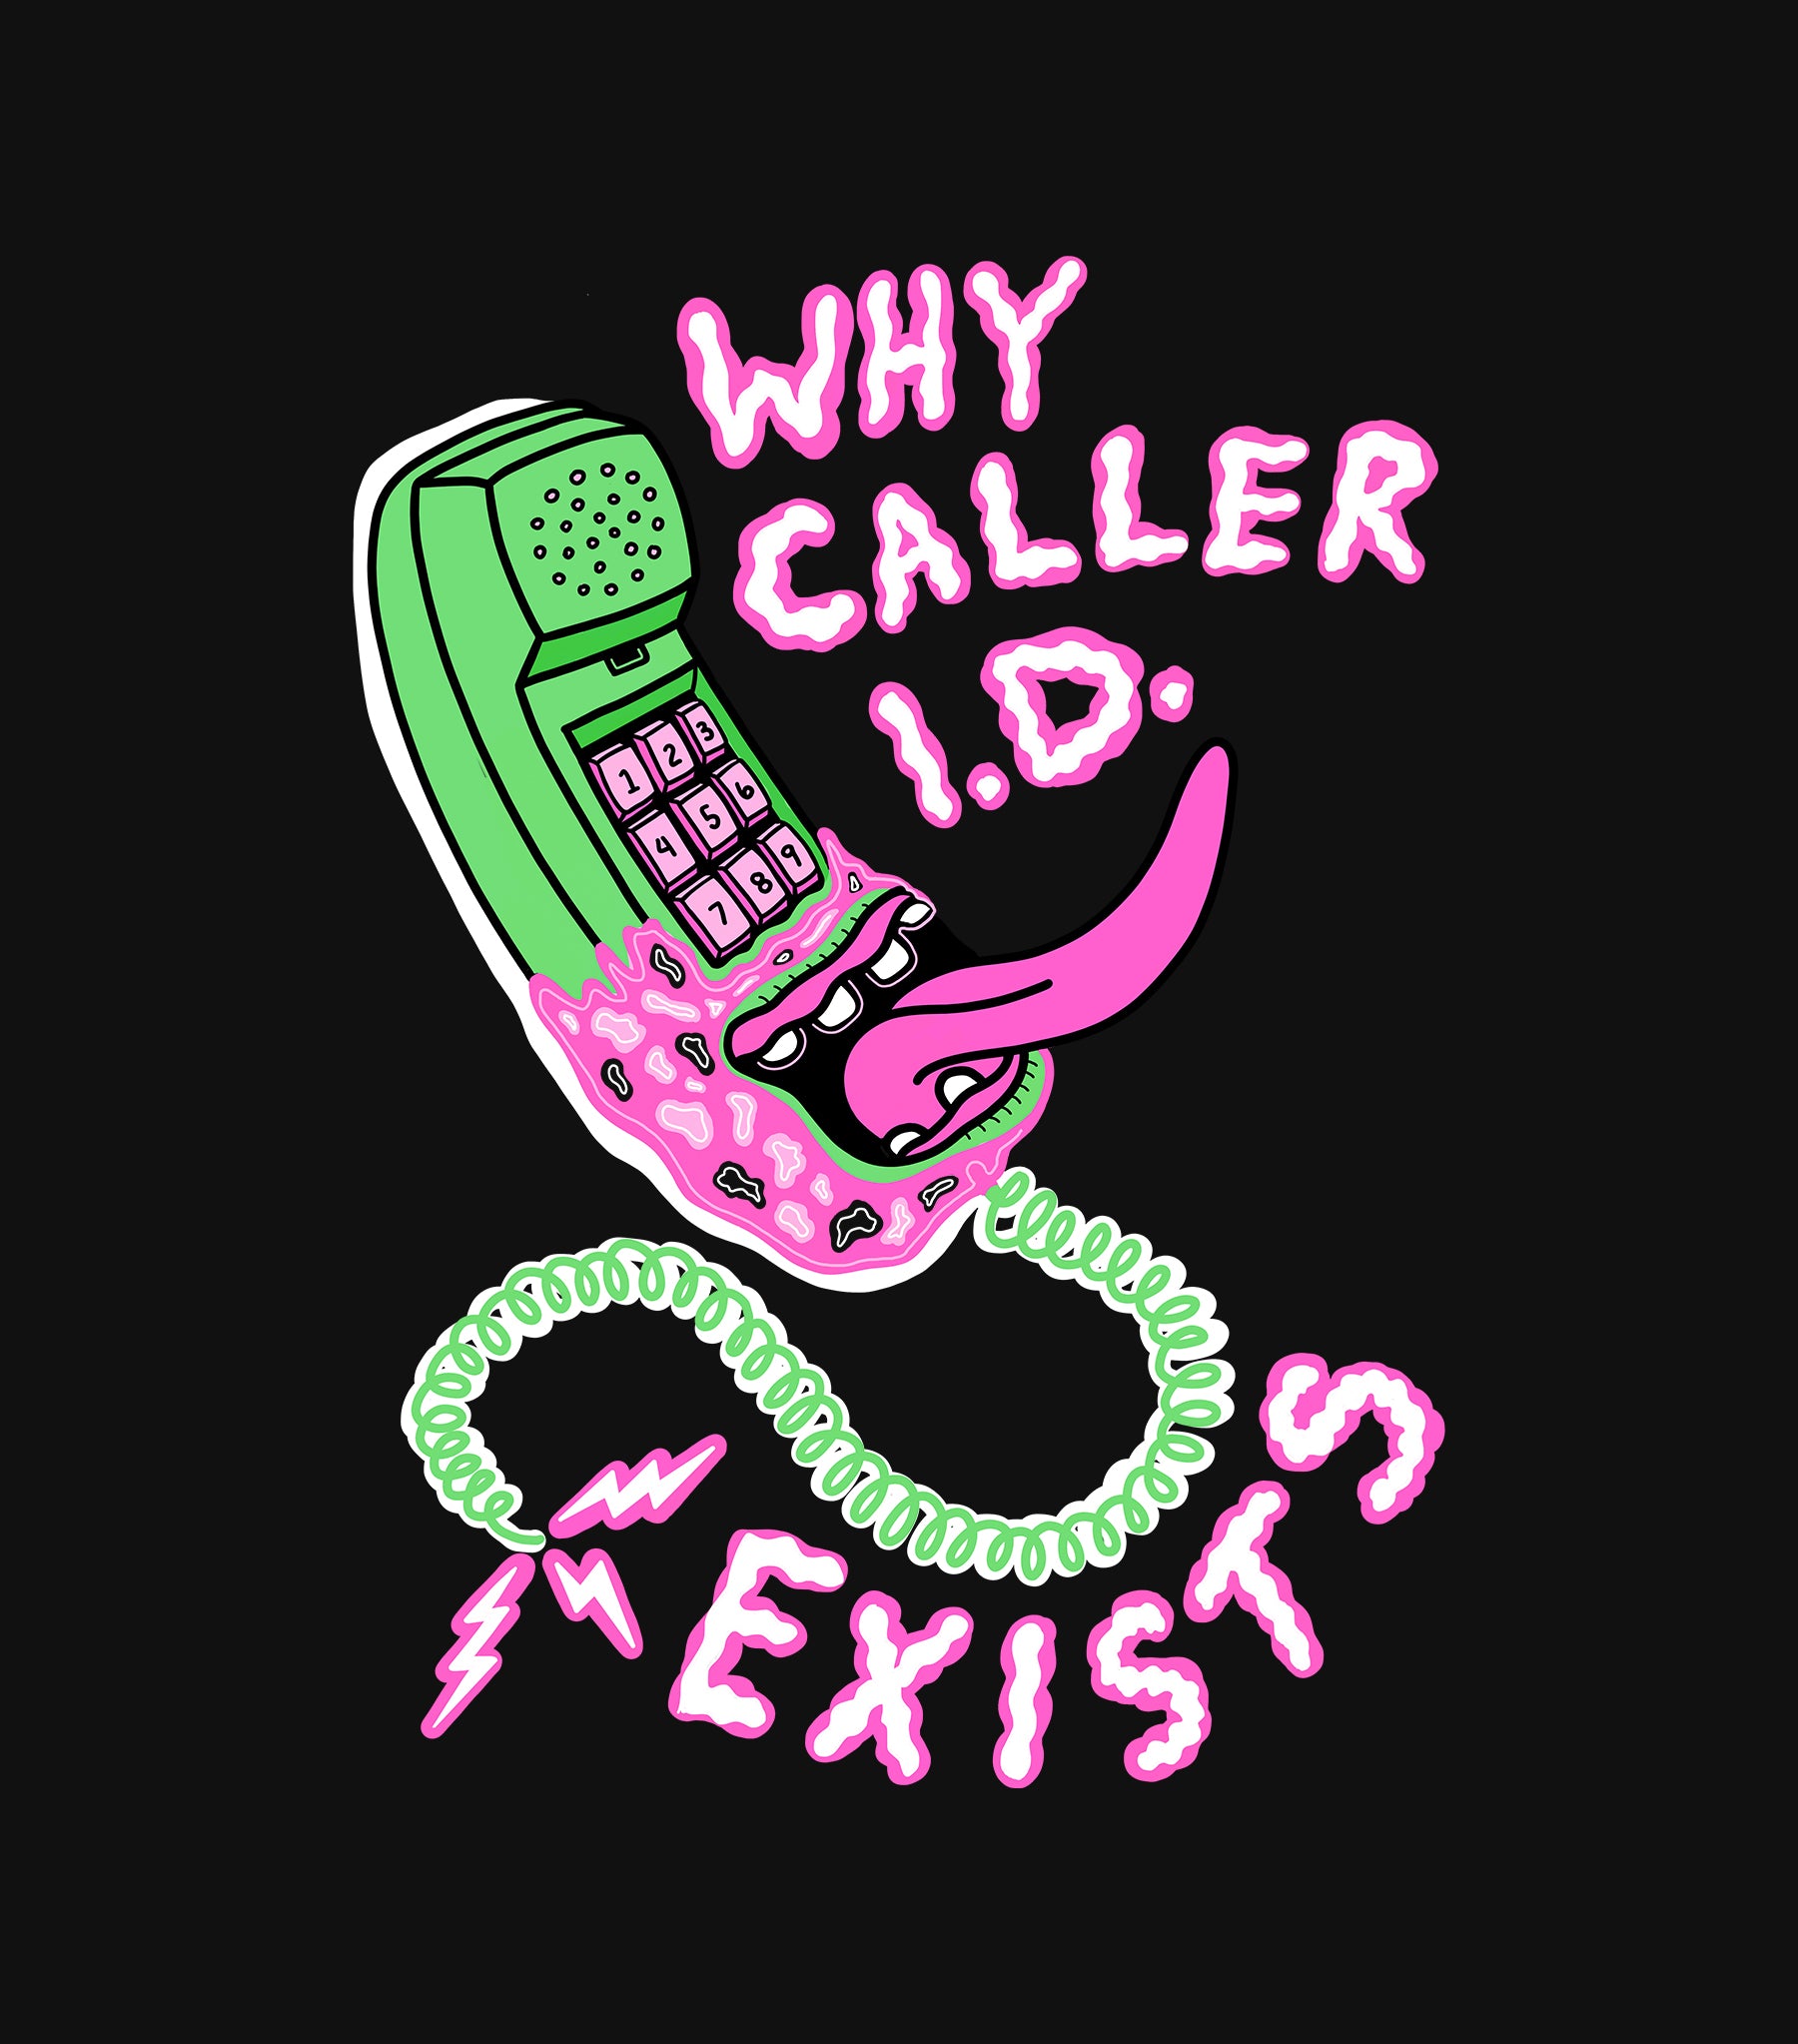 Freddy Kruger Phone Nightmare on Elm Street Horror Slasher T-Shirt